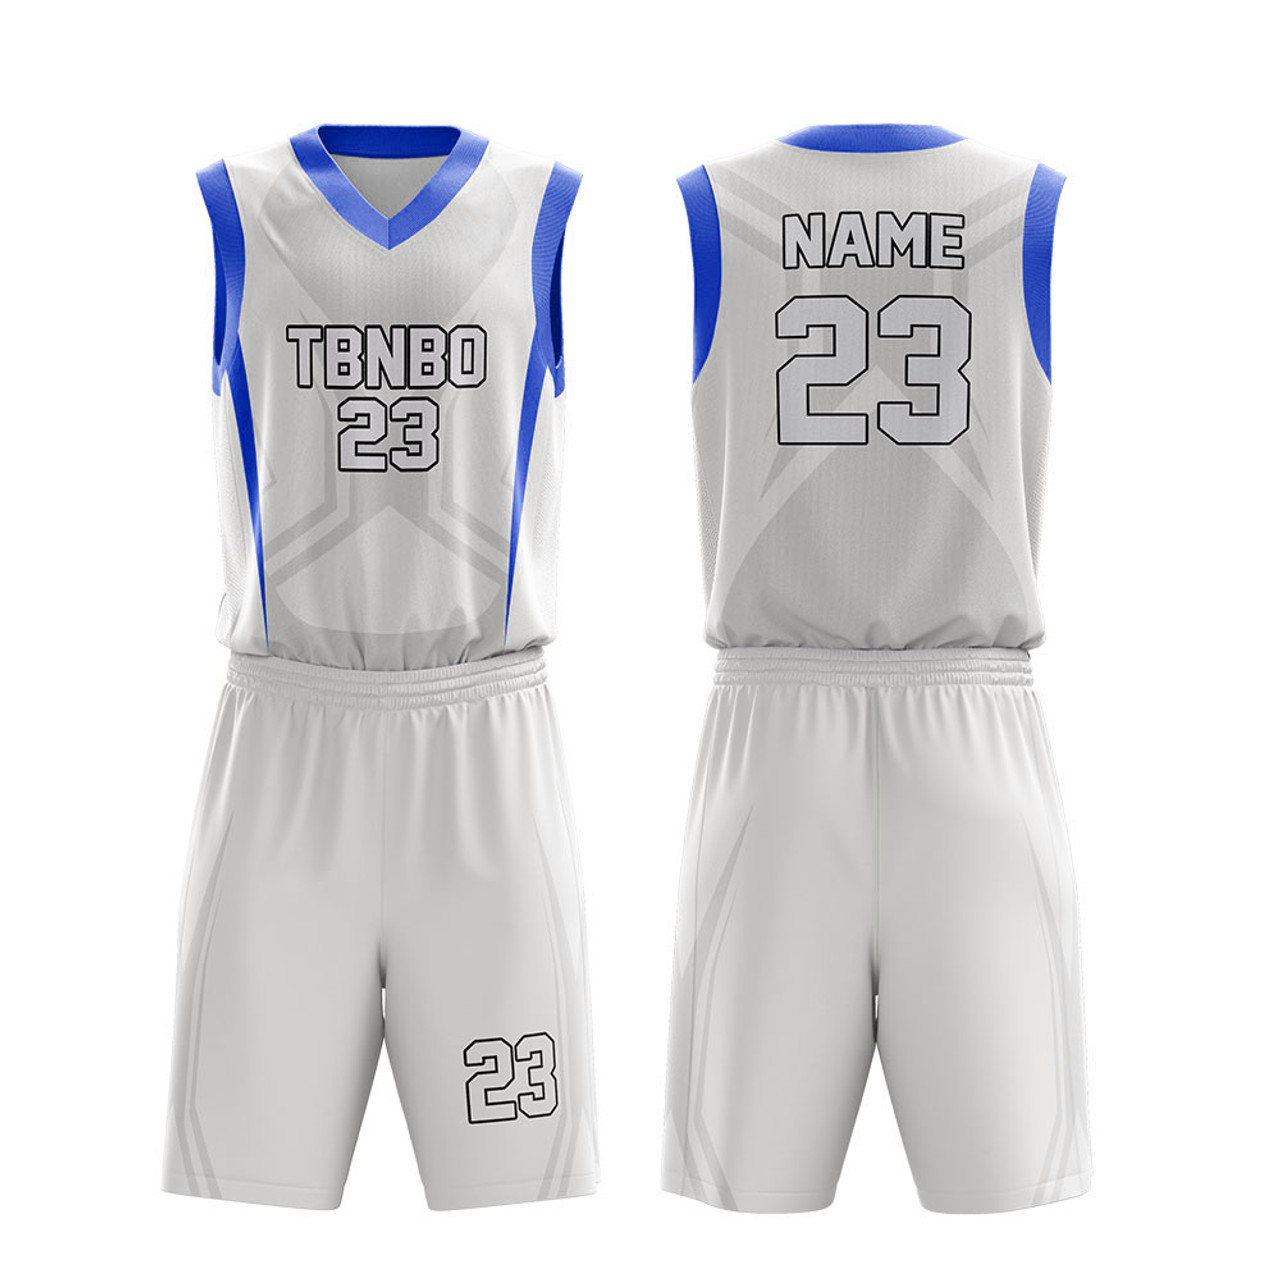 Basketball Jersey Design White Digital Print File Full 